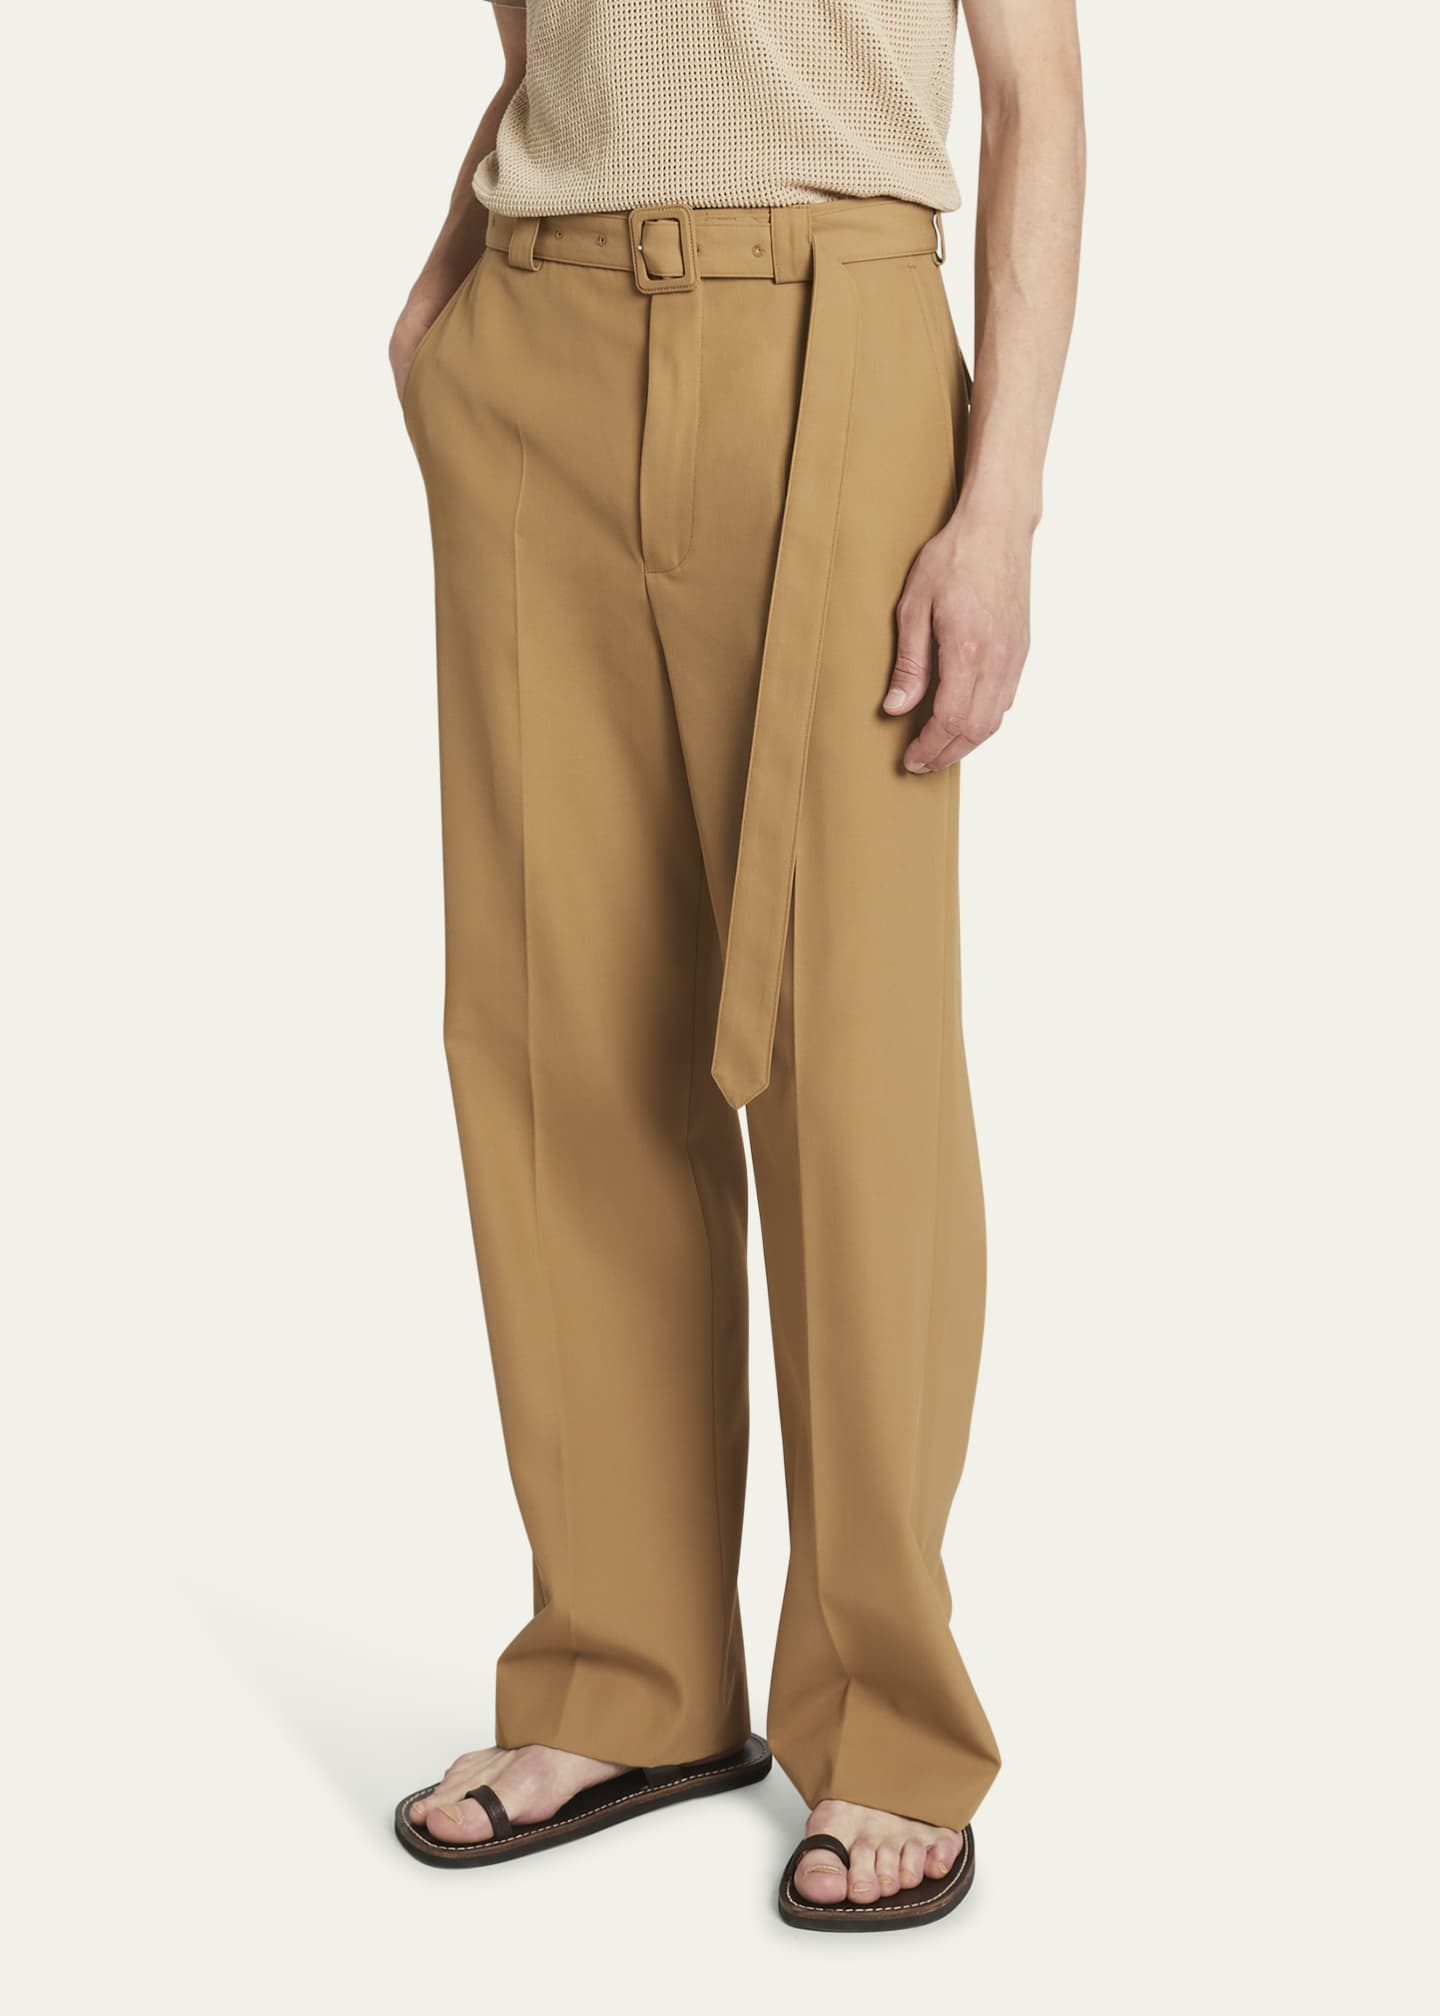 Dries Van Noten Men's Wool-Blend Gabardine Belted Pants